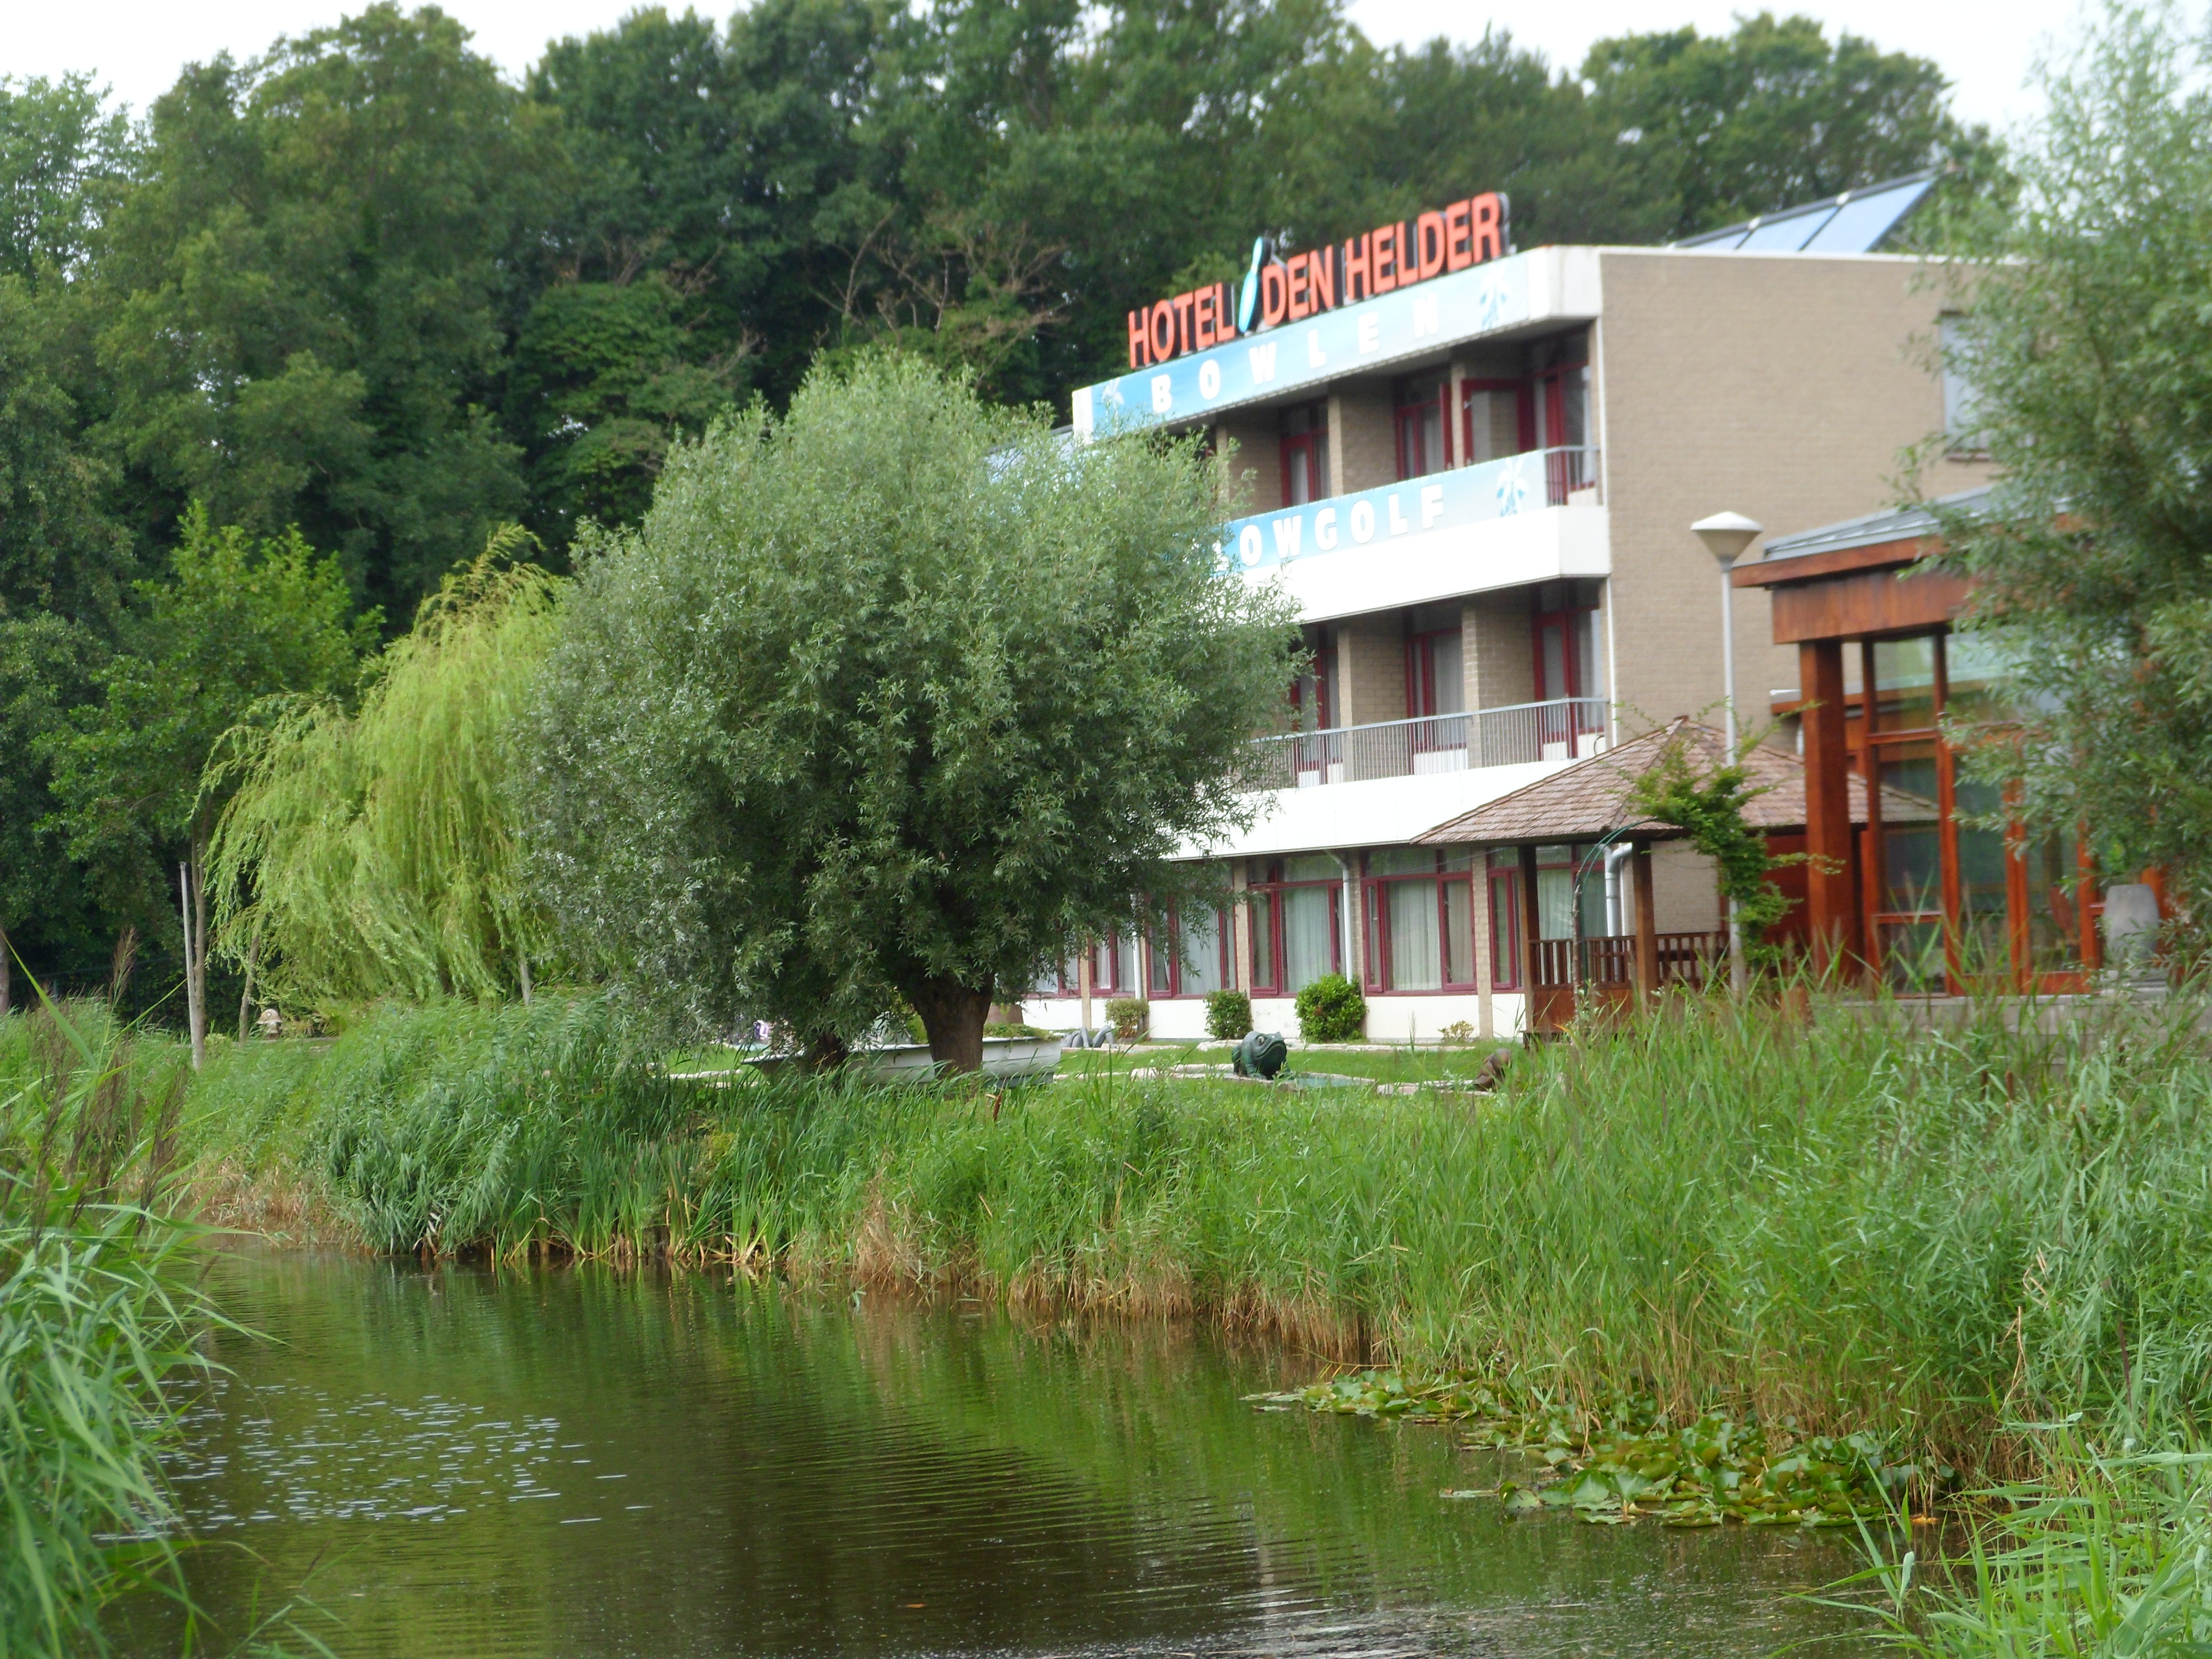 Hotel Den Helder